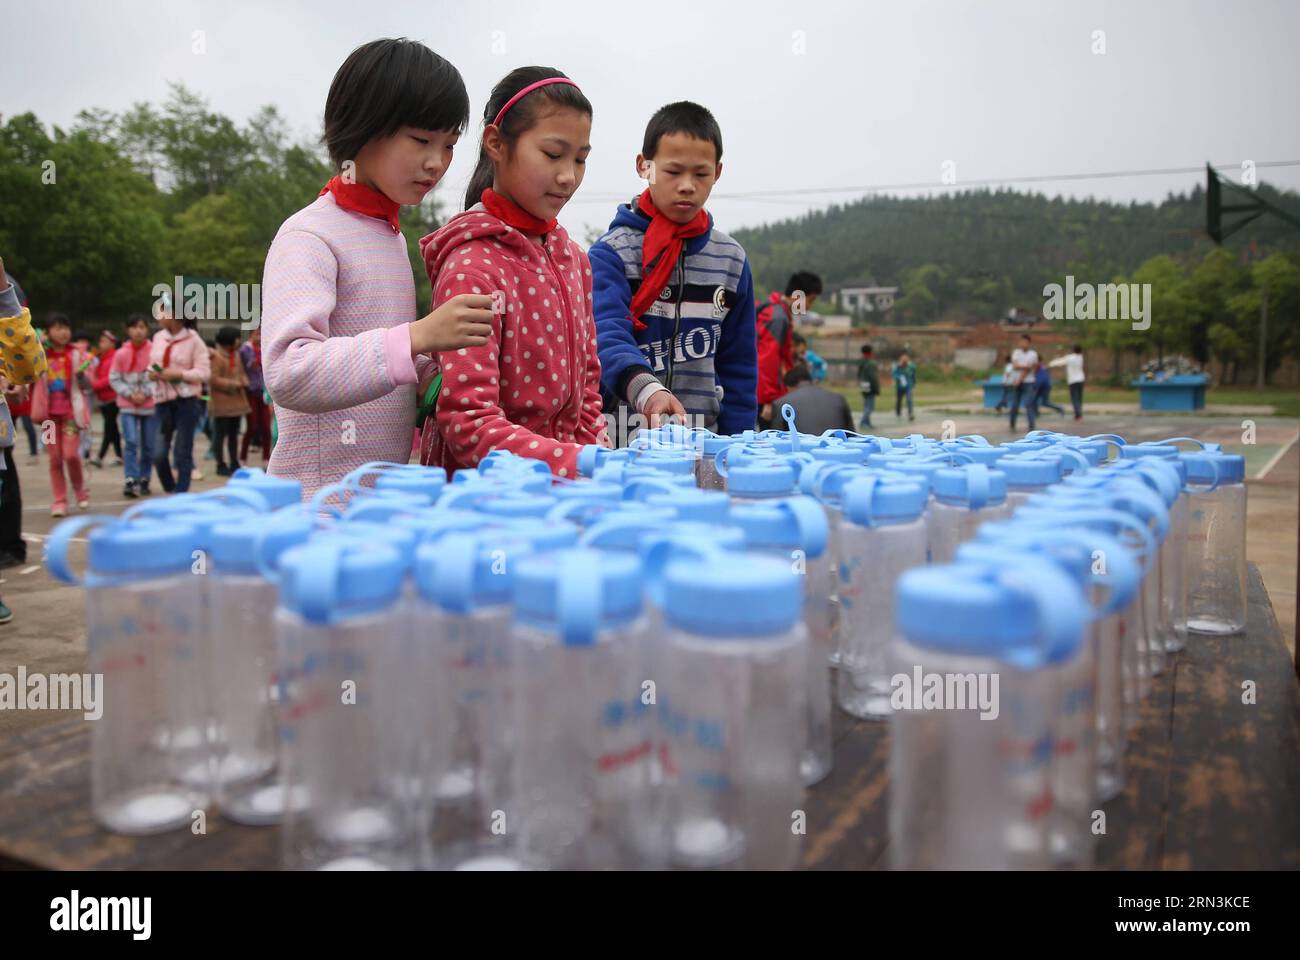 (150421) -- CHANGSHA, 20 avril 2015 -- les élèves reçoivent des tasses gratuites à l'école primaire de Zhifeng à Miluo, dans la province du Hunan au centre de la Chine, le 20 avril 2015. Un projet commun de purification de l ' eau, qui vise à résoudre les difficultés de consommation d ' eau dans les écoles rurales de Chine, a fourni plus de 300 équipements de purification de l ' eau à 283 écoles depuis 2012. (MCG) CHINA-HUNAN-MILUO-SCHOOL-WATER PURIFICATION PROJECT (CN) LixGa PUBLICATIONxNOTxINxCHN Changsha avril 20 2015 les élèves reçoivent des coupes gratuites À l'école primaire de Miluo Central China S Hunan province avril 20 2015 un projet commun de purification de l'eau Banque D'Images